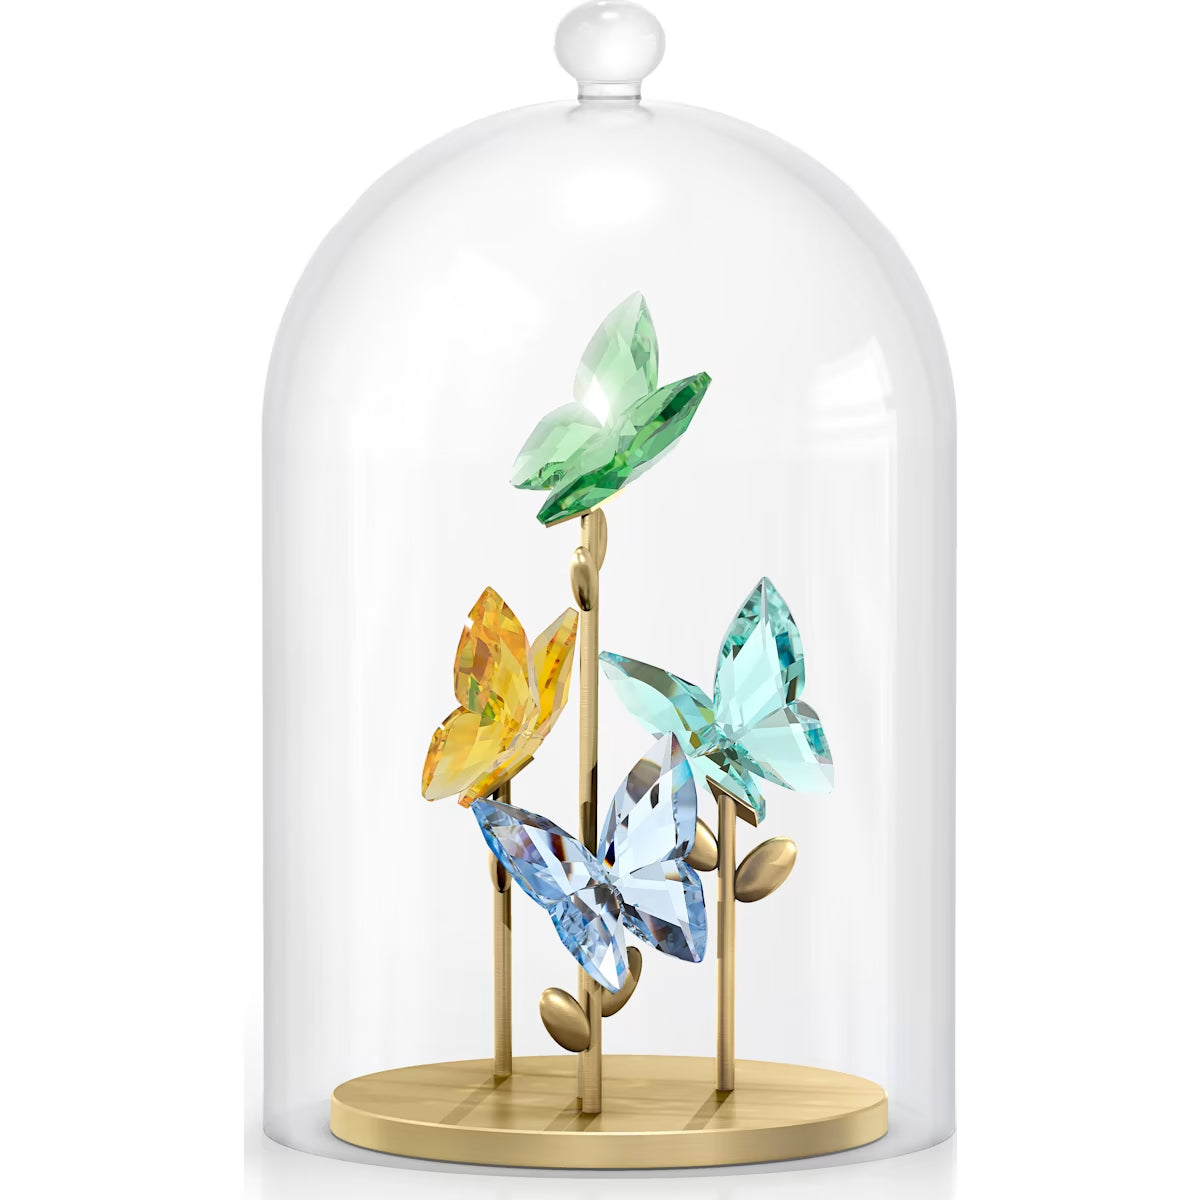 Jungle Beats - Glass bell and Butterflies - Figurine - Swarovski